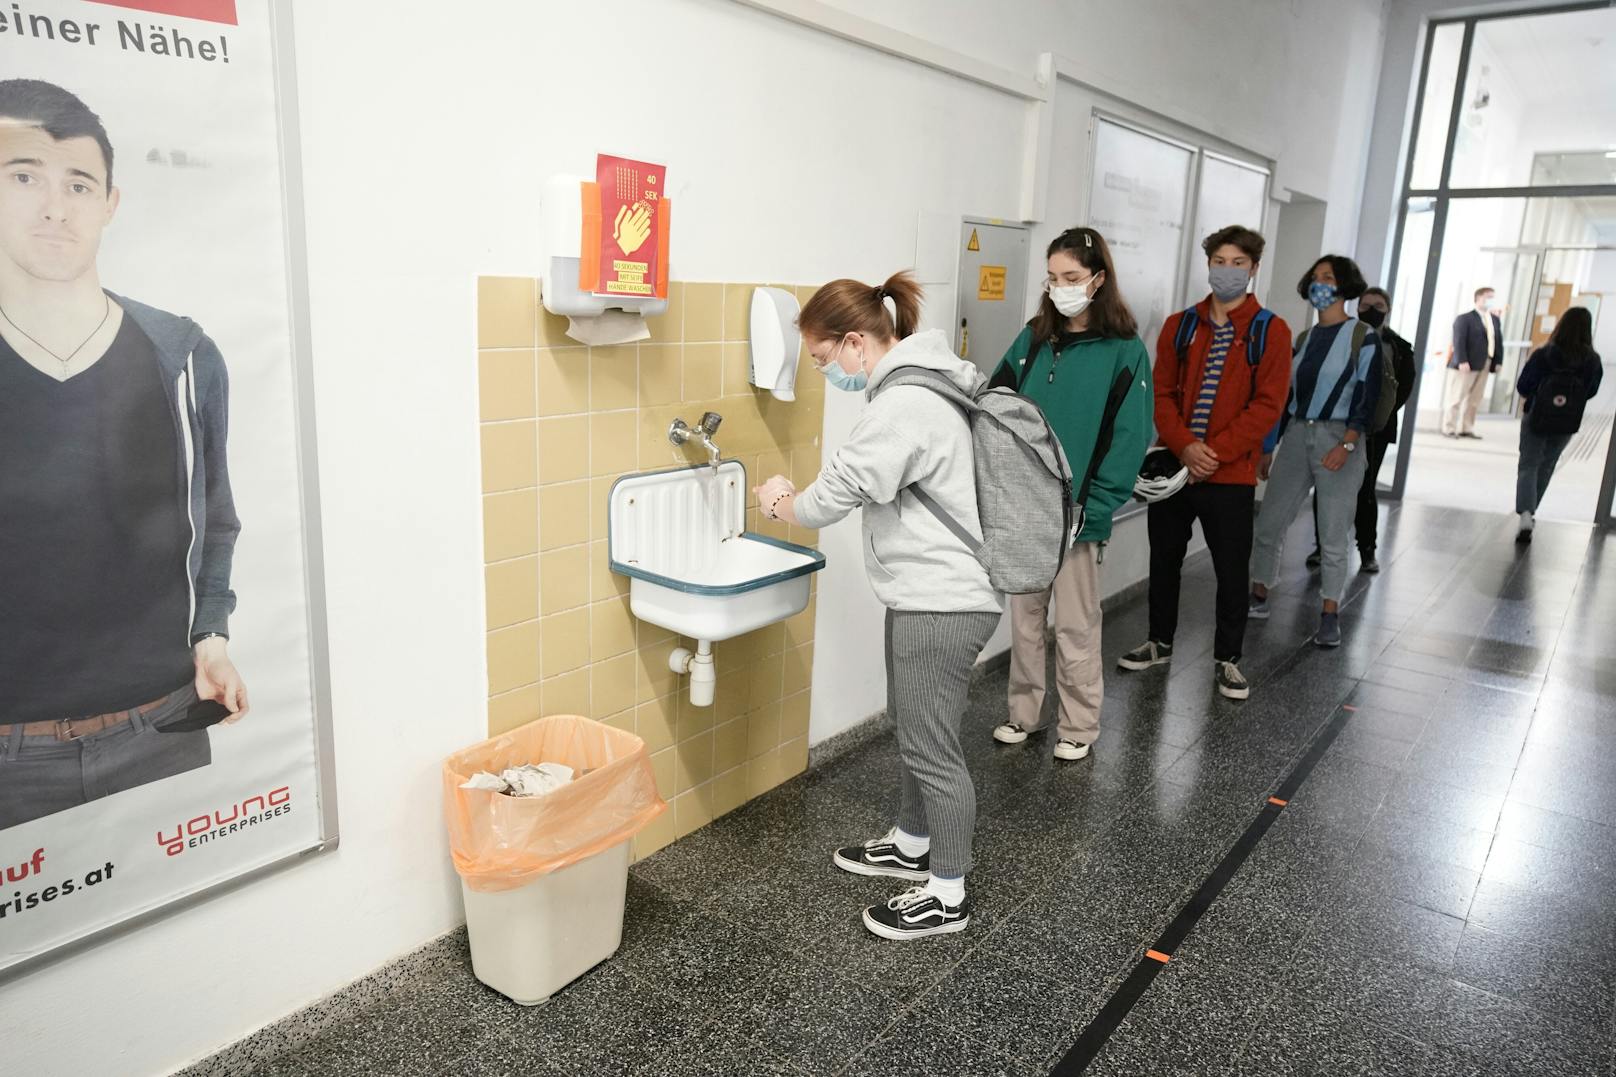 Die Schüler müssen sich  unter Aufsicht die Hände waschen.